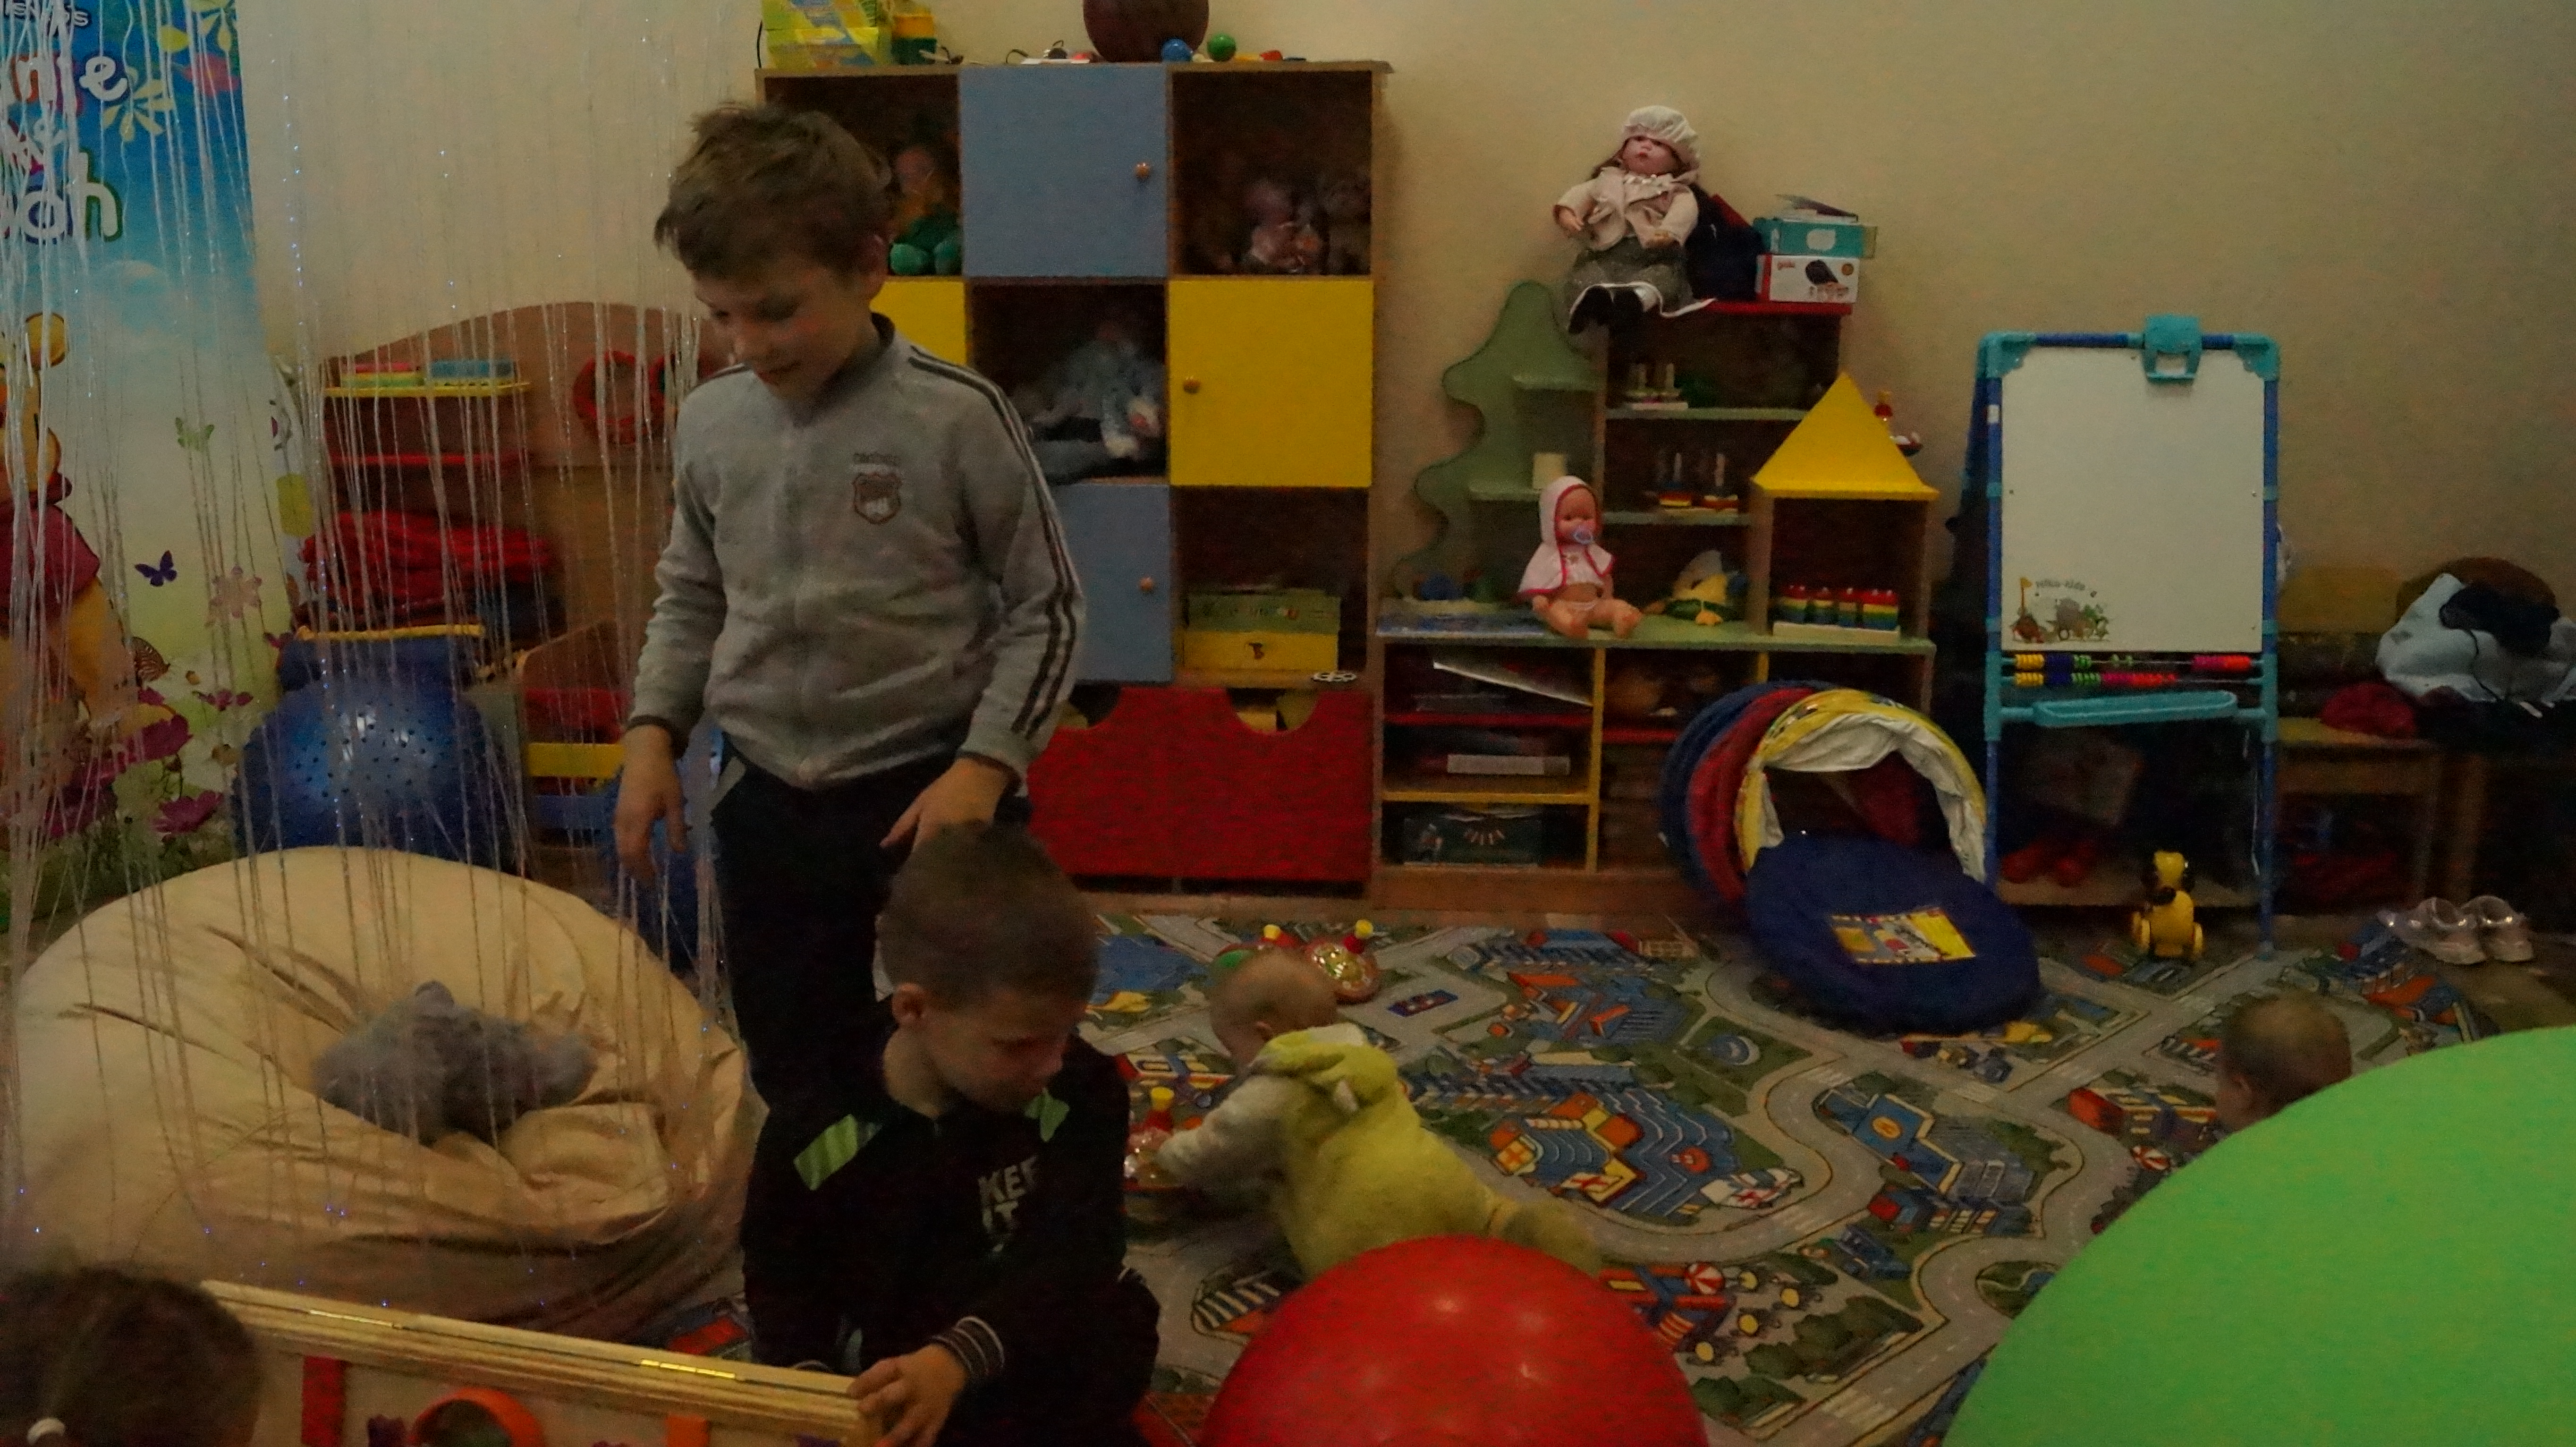 21 сентября 2019 года в бюджетном учреждении социального обслуживания Вологодской области «Территориальный центр социальной помощи семье и детям» состоялся День открытых дверей